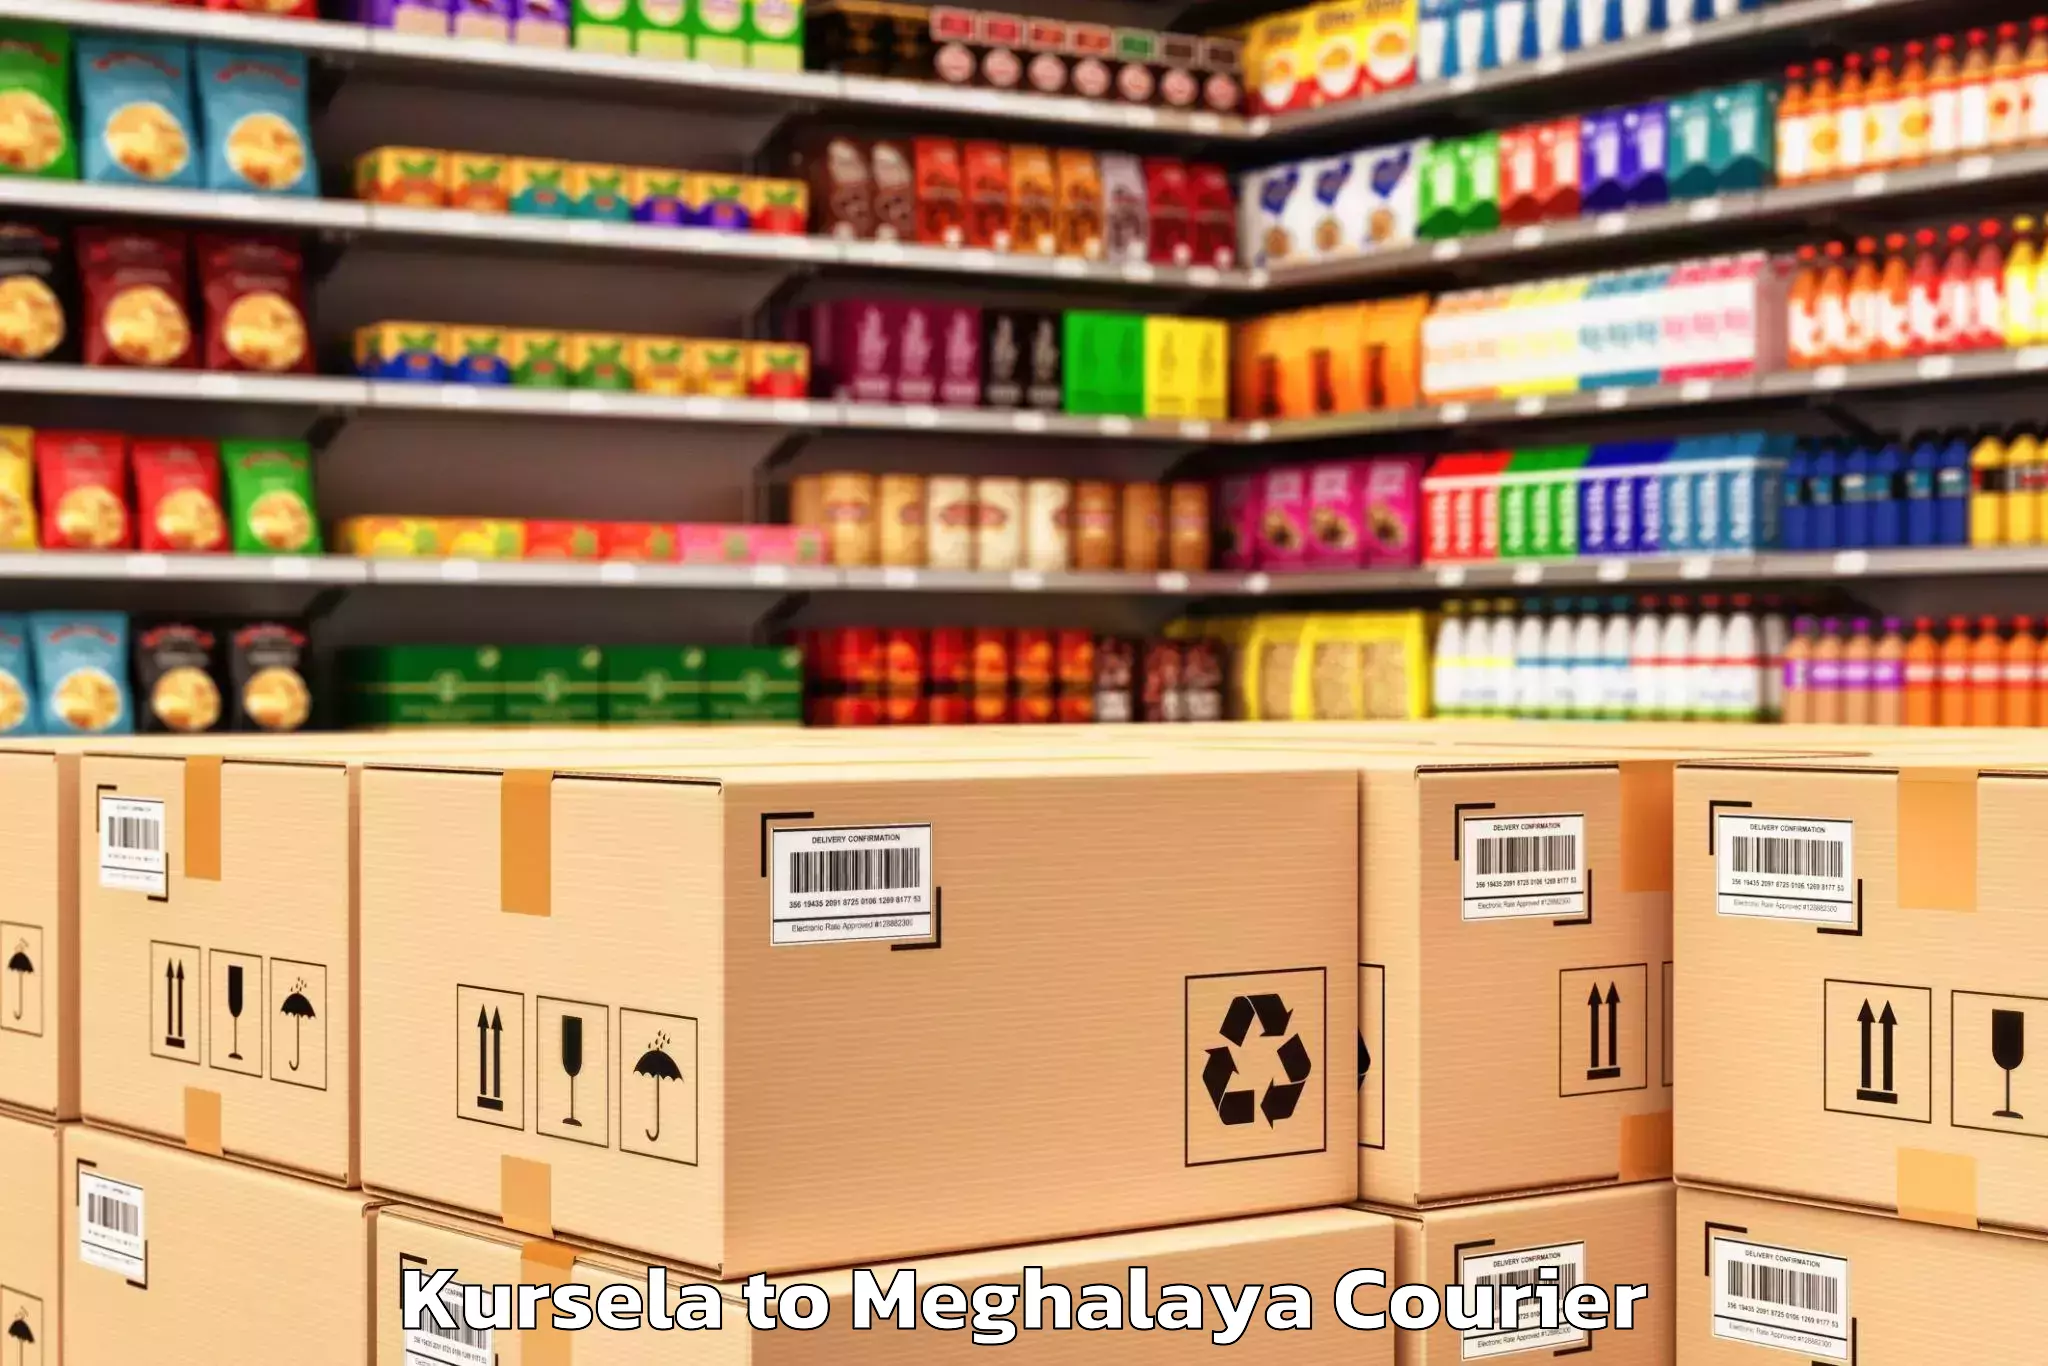 Quality moving company Kursela to Meghalaya